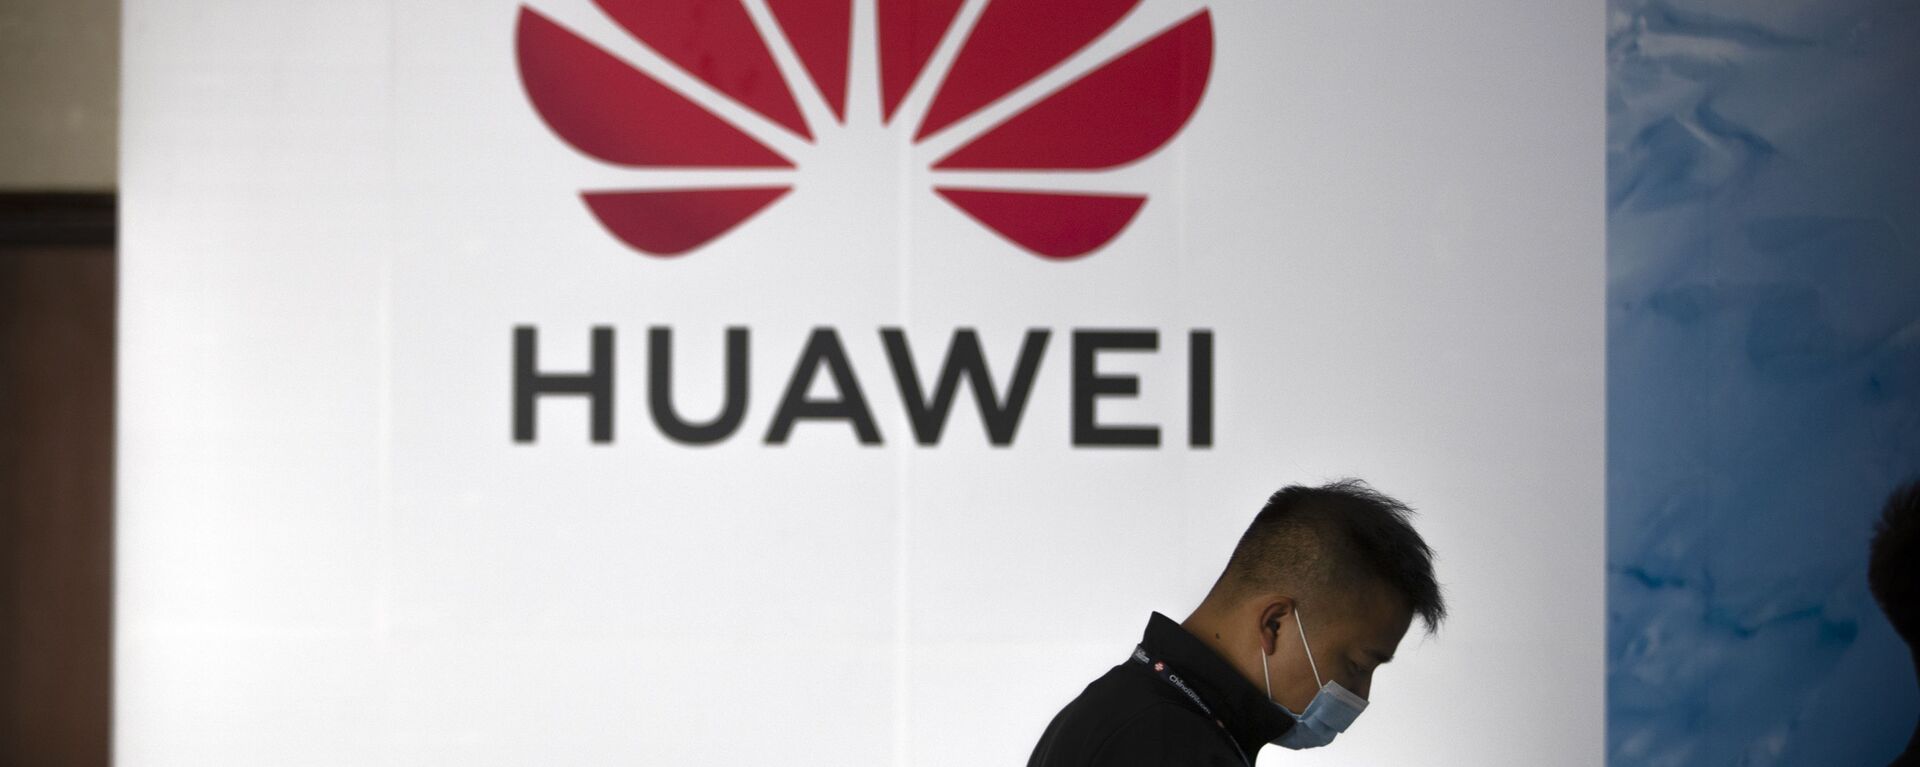 Una persona camina delante del logotipo de Huawei en una feria tecnológica en Pekín - Sputnik Mundo, 1920, 02.02.2022